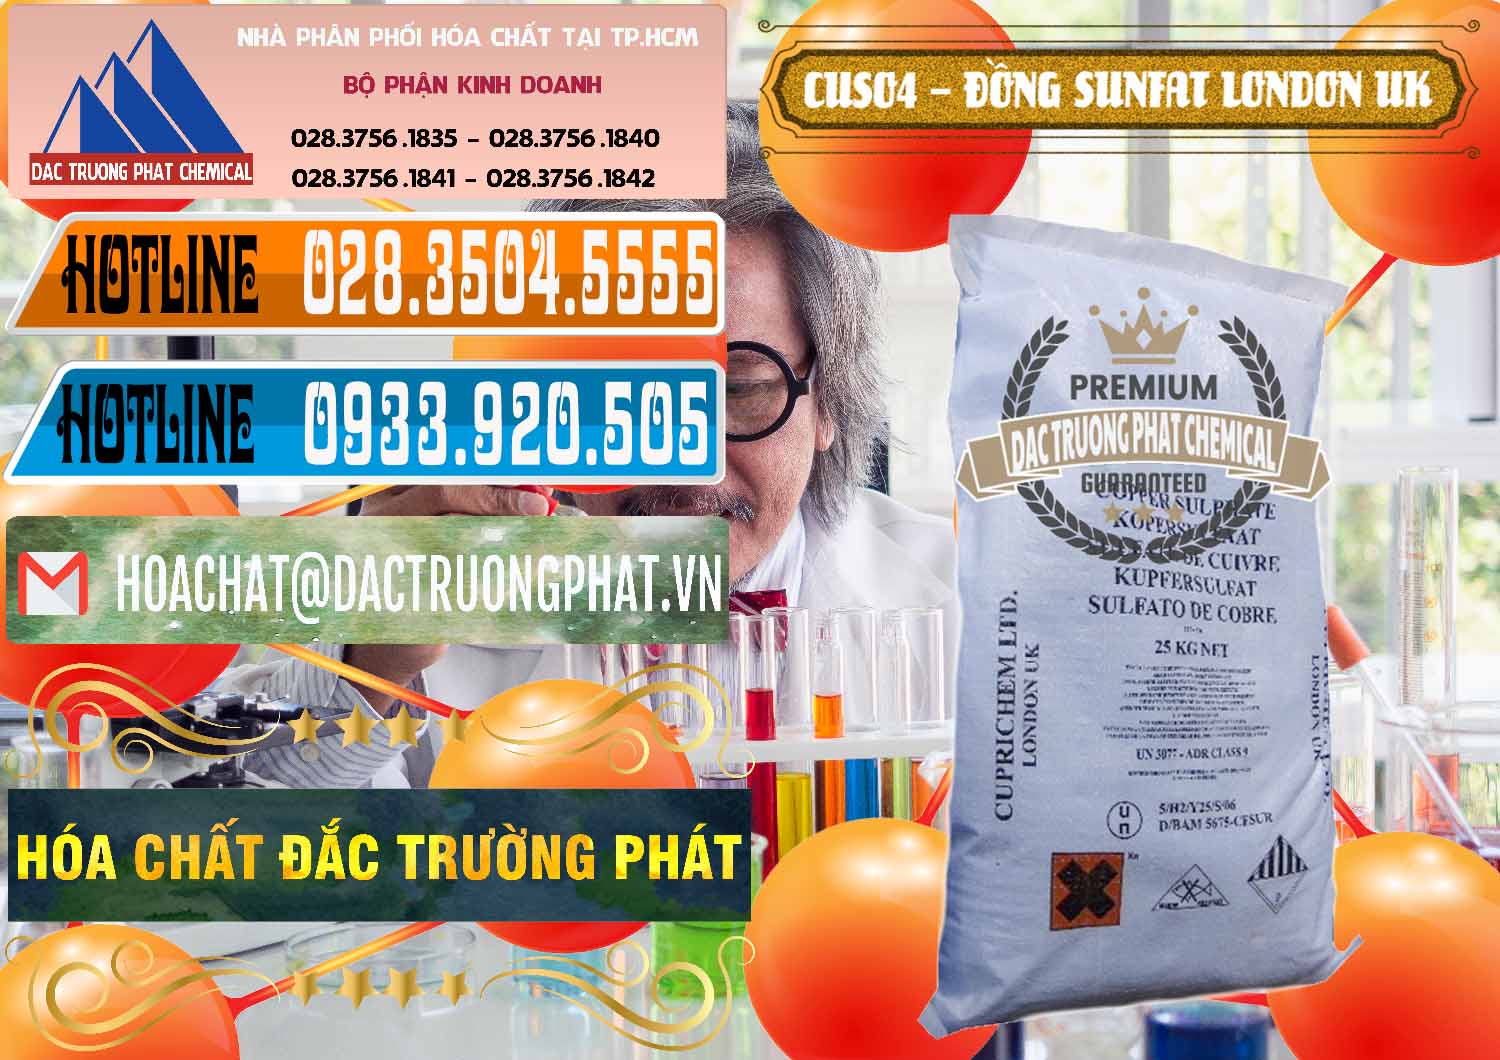 Nơi chuyên nhập khẩu và bán CuSO4 – Đồng Sunfat Anh Uk Kingdoms - 0478 - Công ty nhập khẩu & cung cấp hóa chất tại TP.HCM - stmp.net